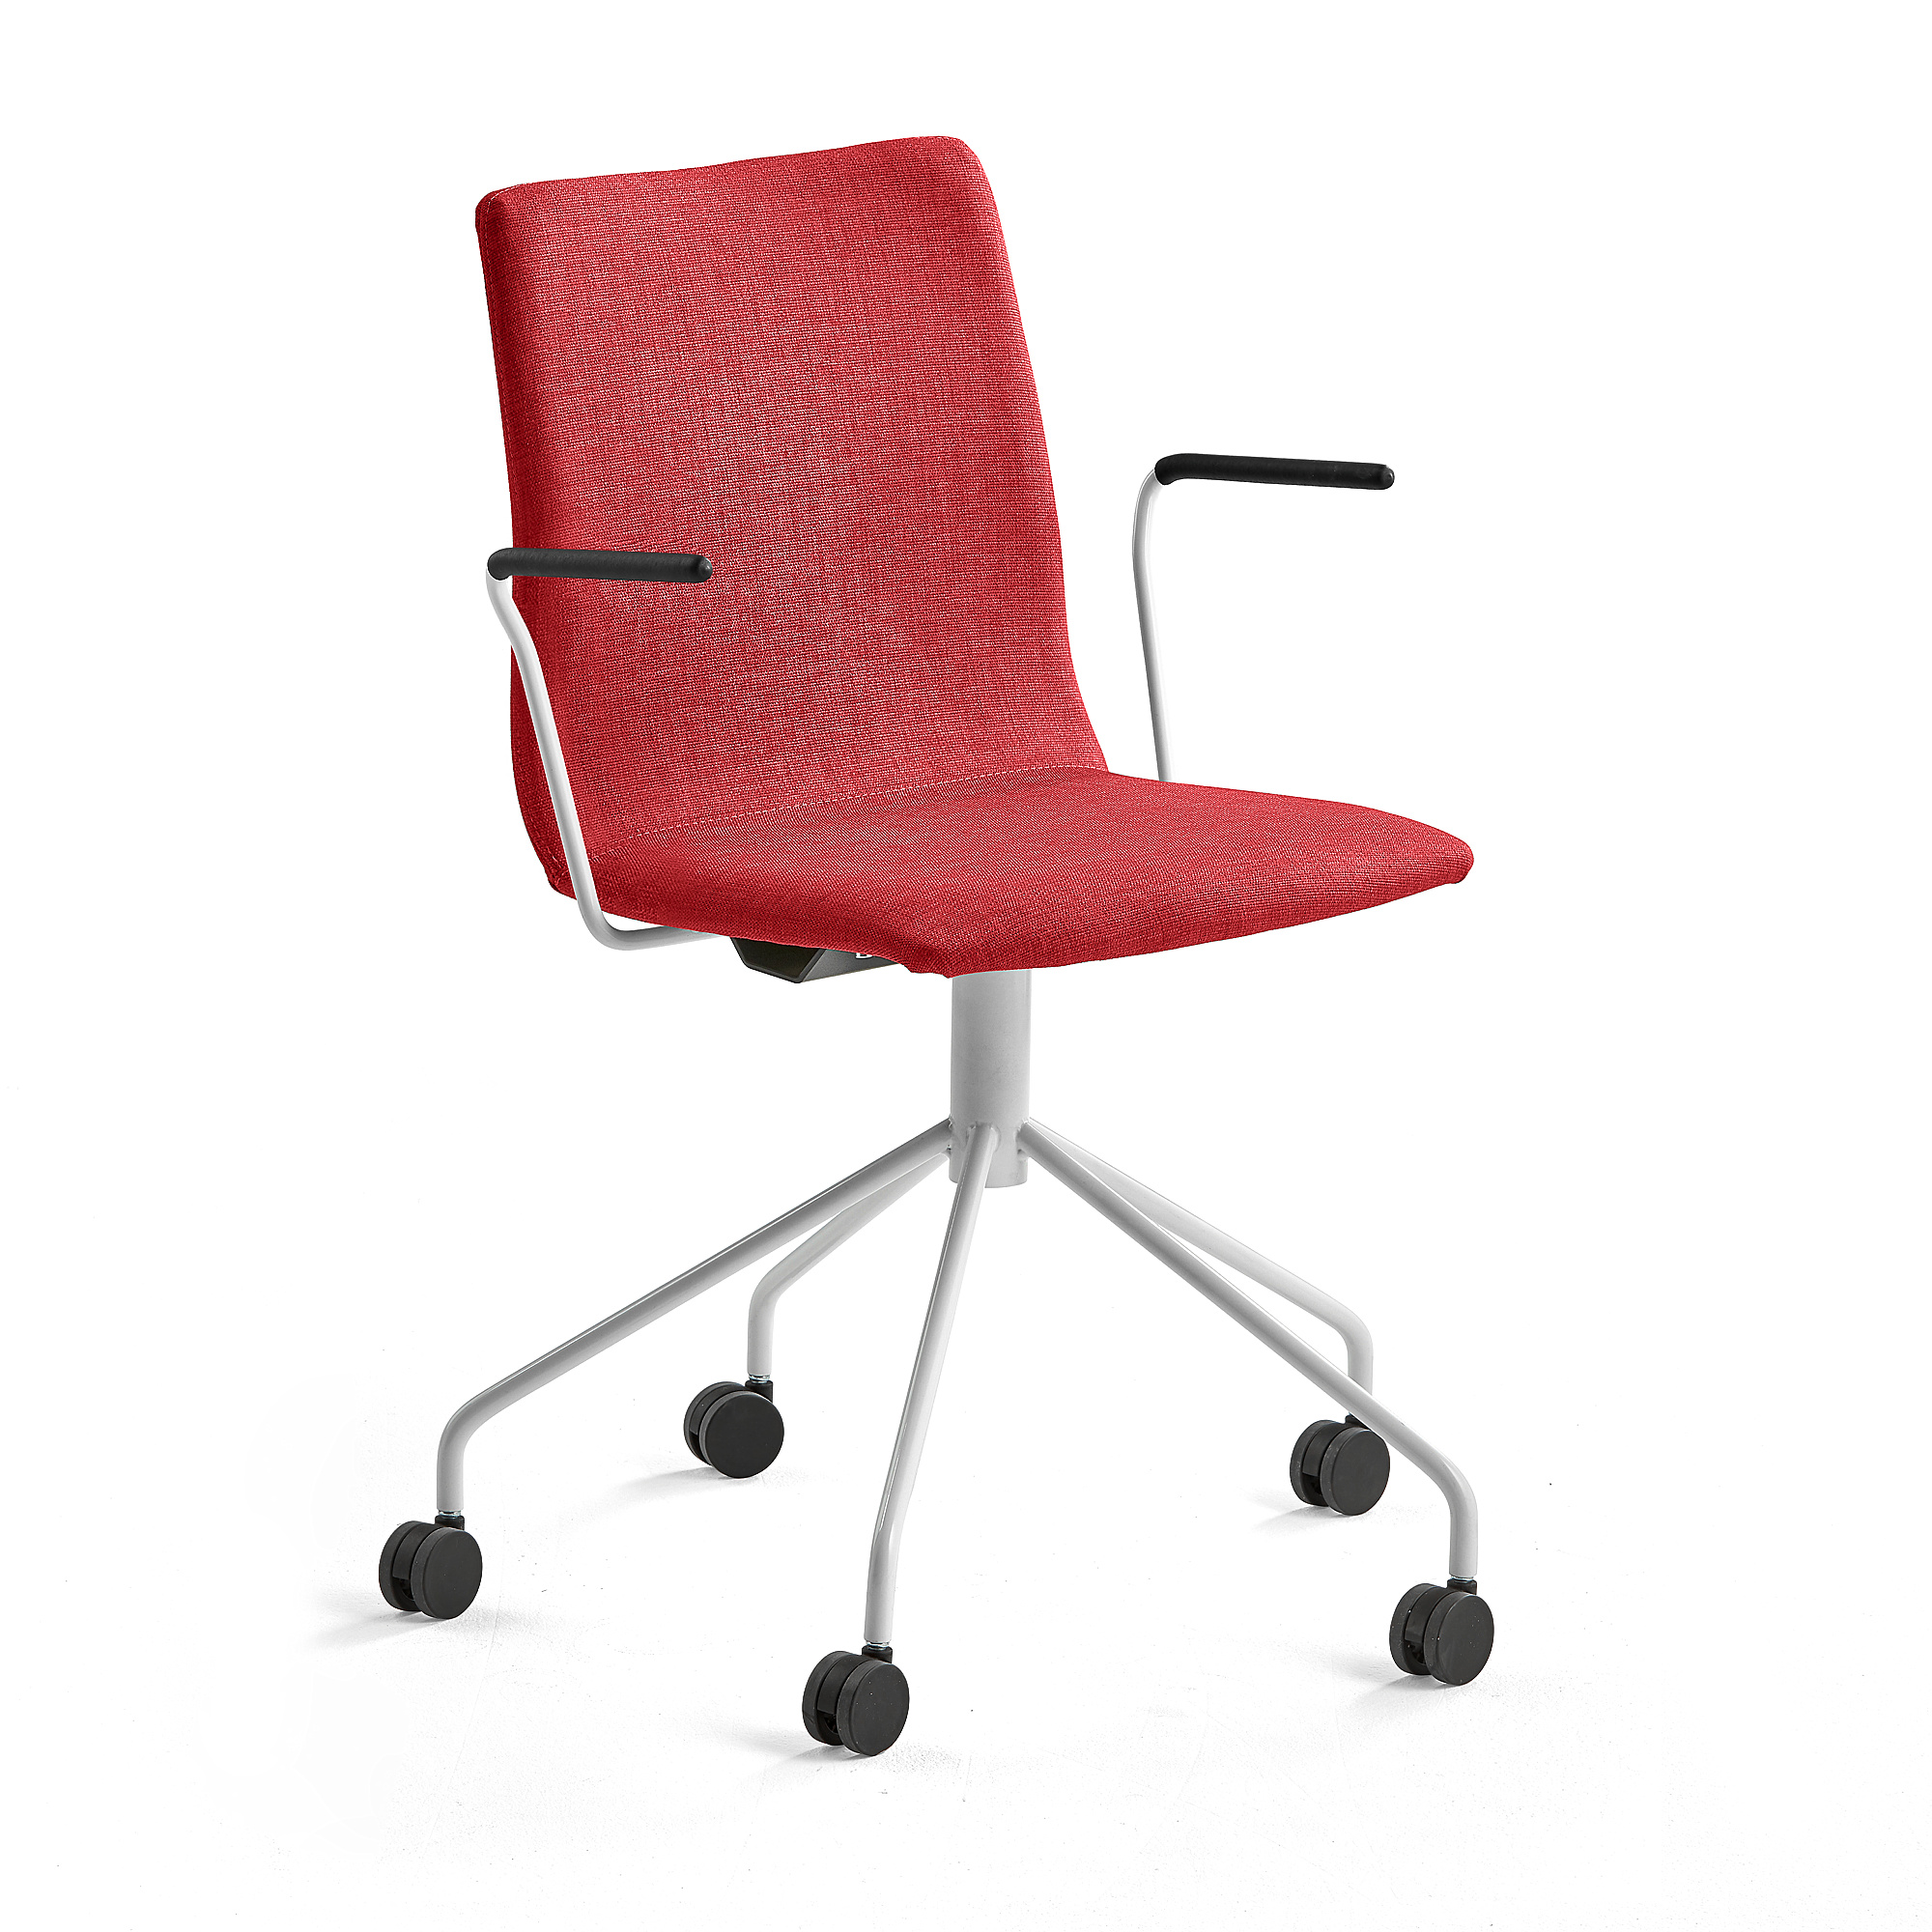 Konferenčná stolička OTTAWA, s kolieskami a opierkami rúk, červená, biela